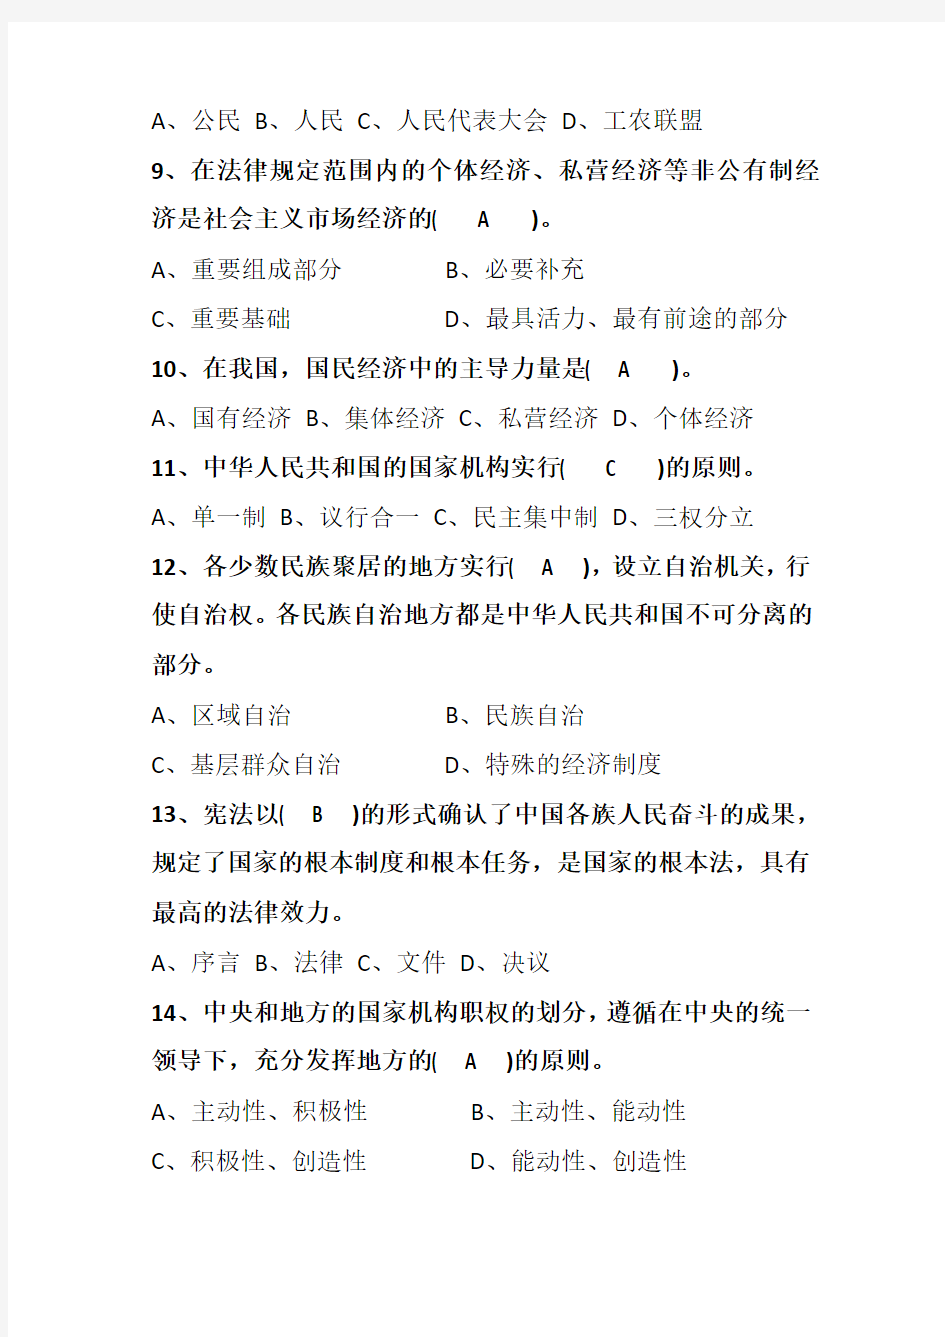 2018最新版重庆市普法考试,宪法、监察法 答案全(100分)